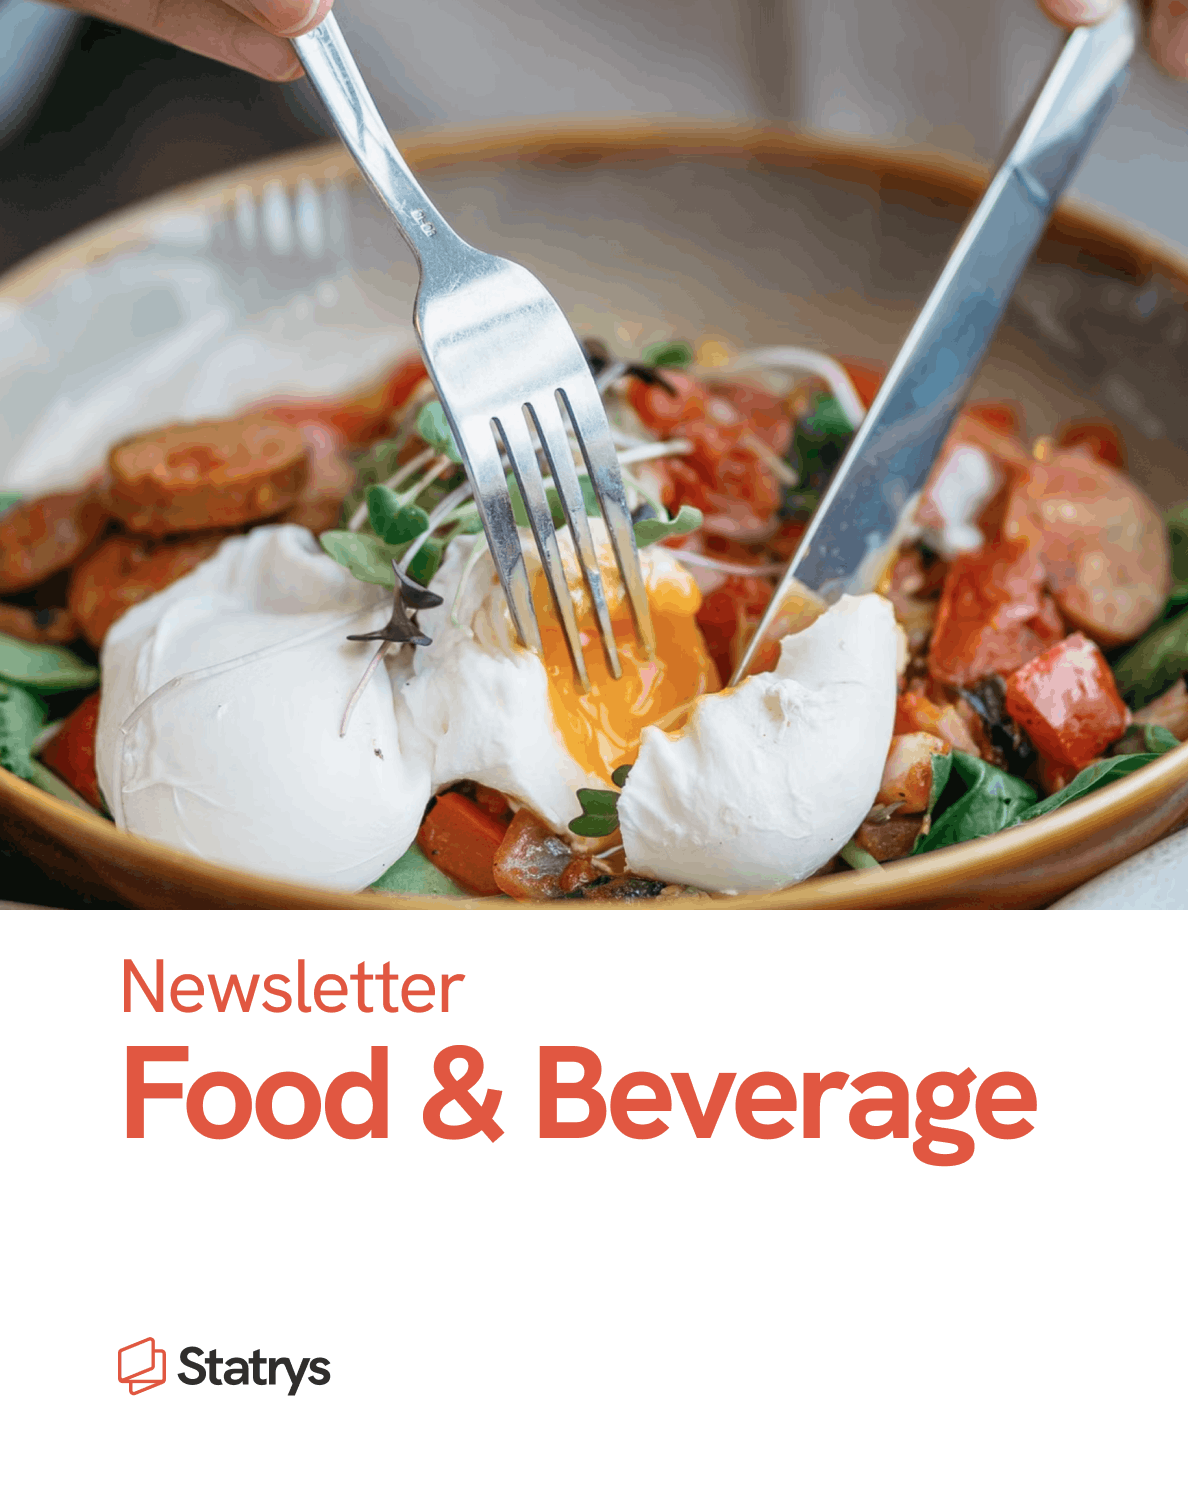 Food & beverage newsletter